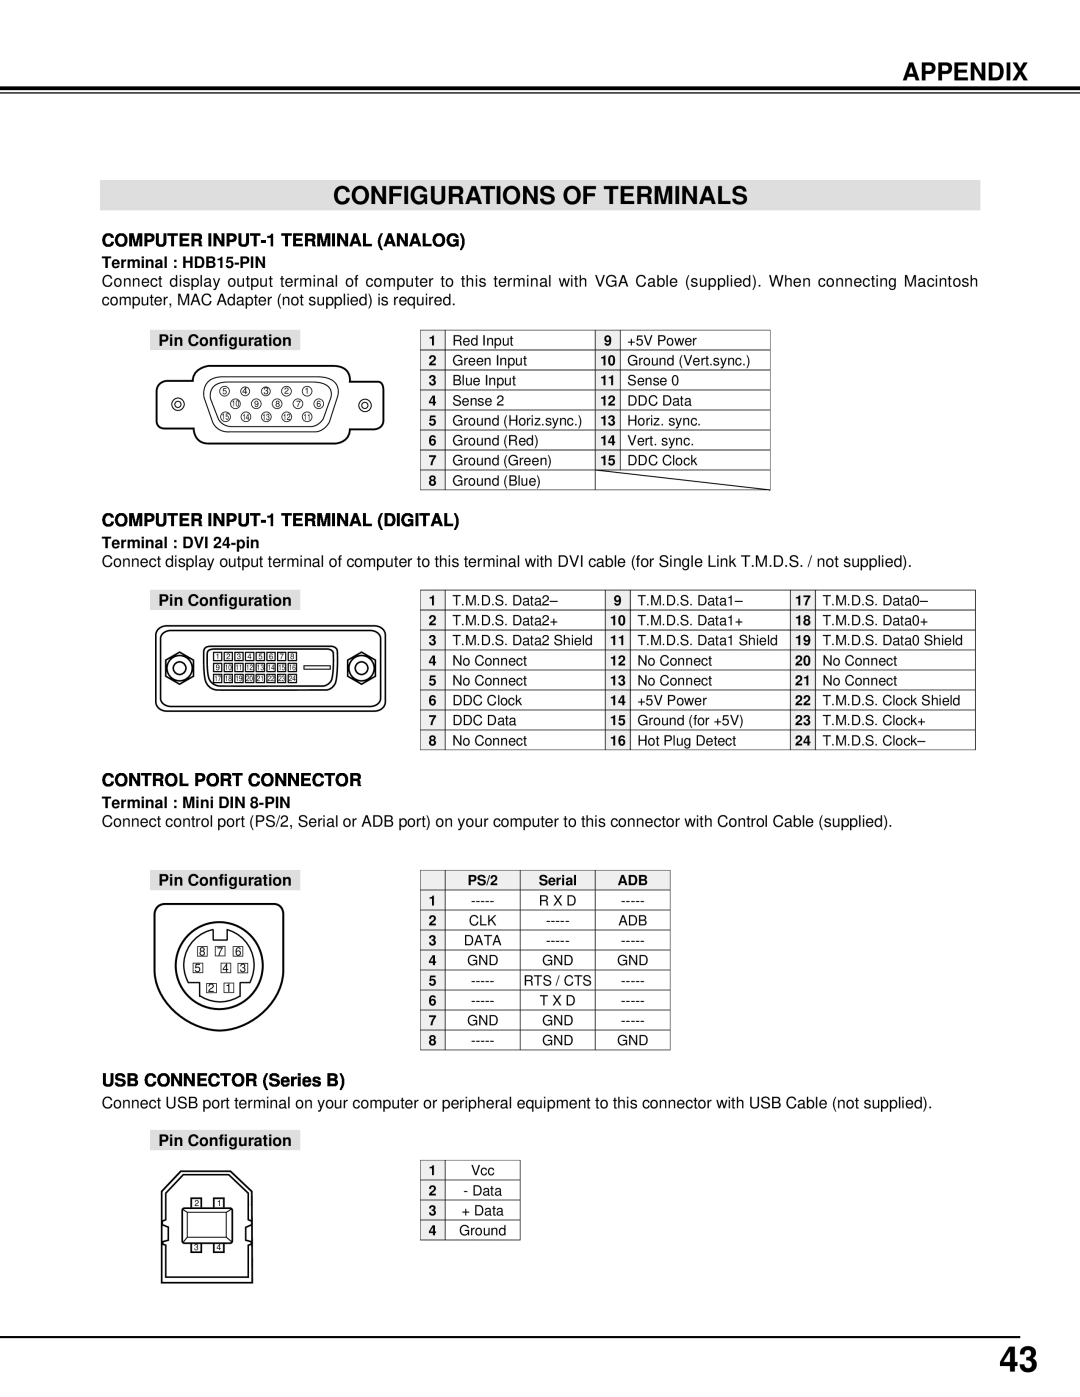 BOXLIGHT MP-41T manual Appendix Configurations Of Terminals, Terminal HDB15-PIN, Pin Configuration, Terminal DVI 24-pin 